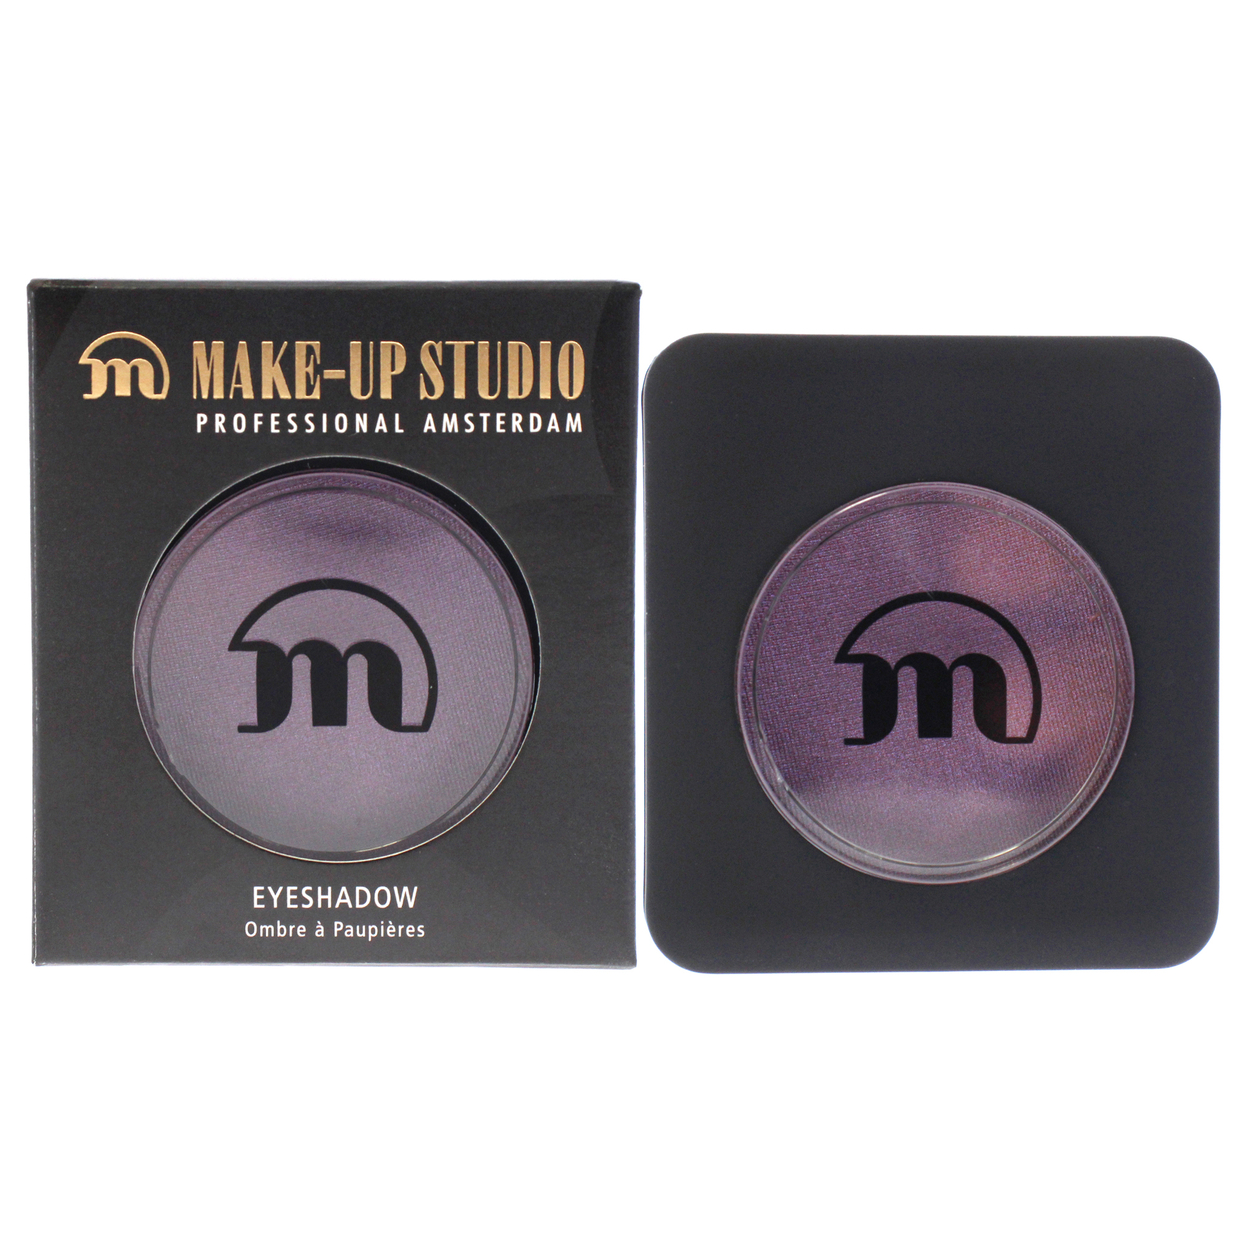 Make-Up Studio Eyeshadow - 104 Eye Shadow 0.11 Oz